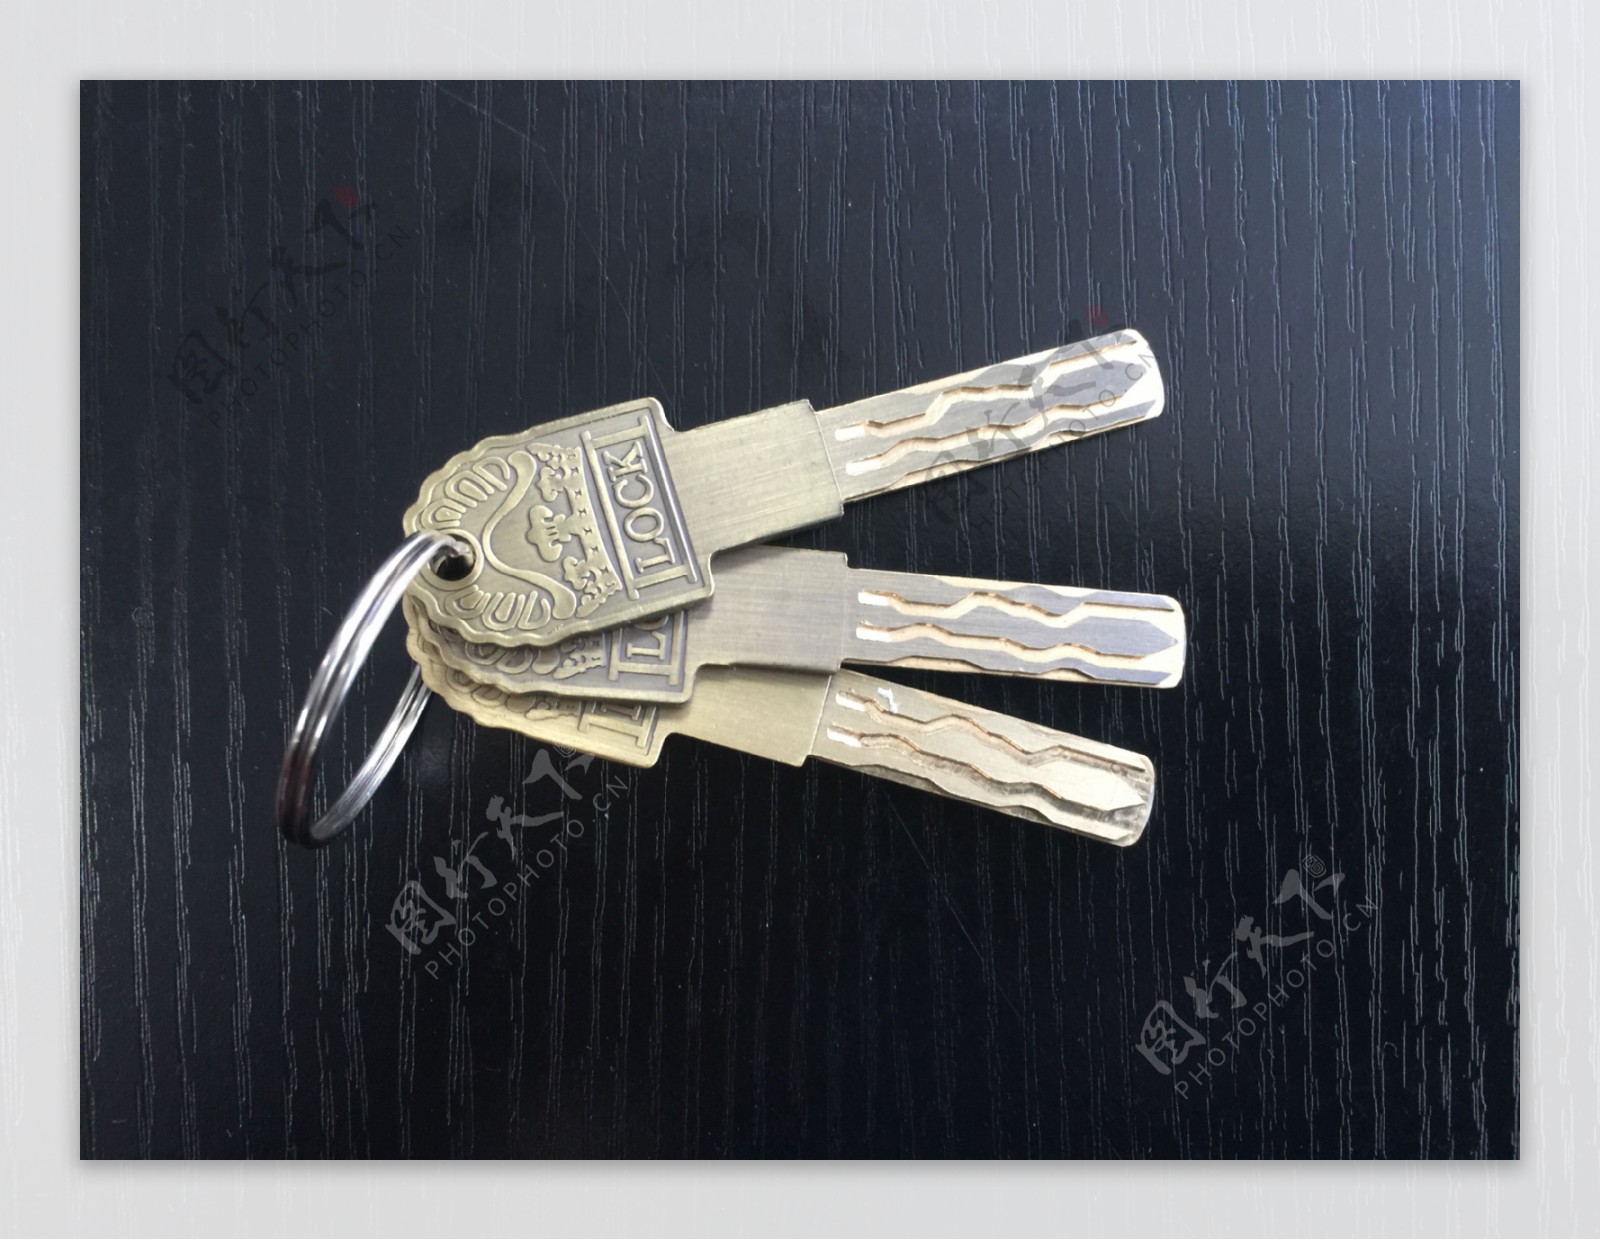 指纹密码锁钥匙超B锁芯钥匙